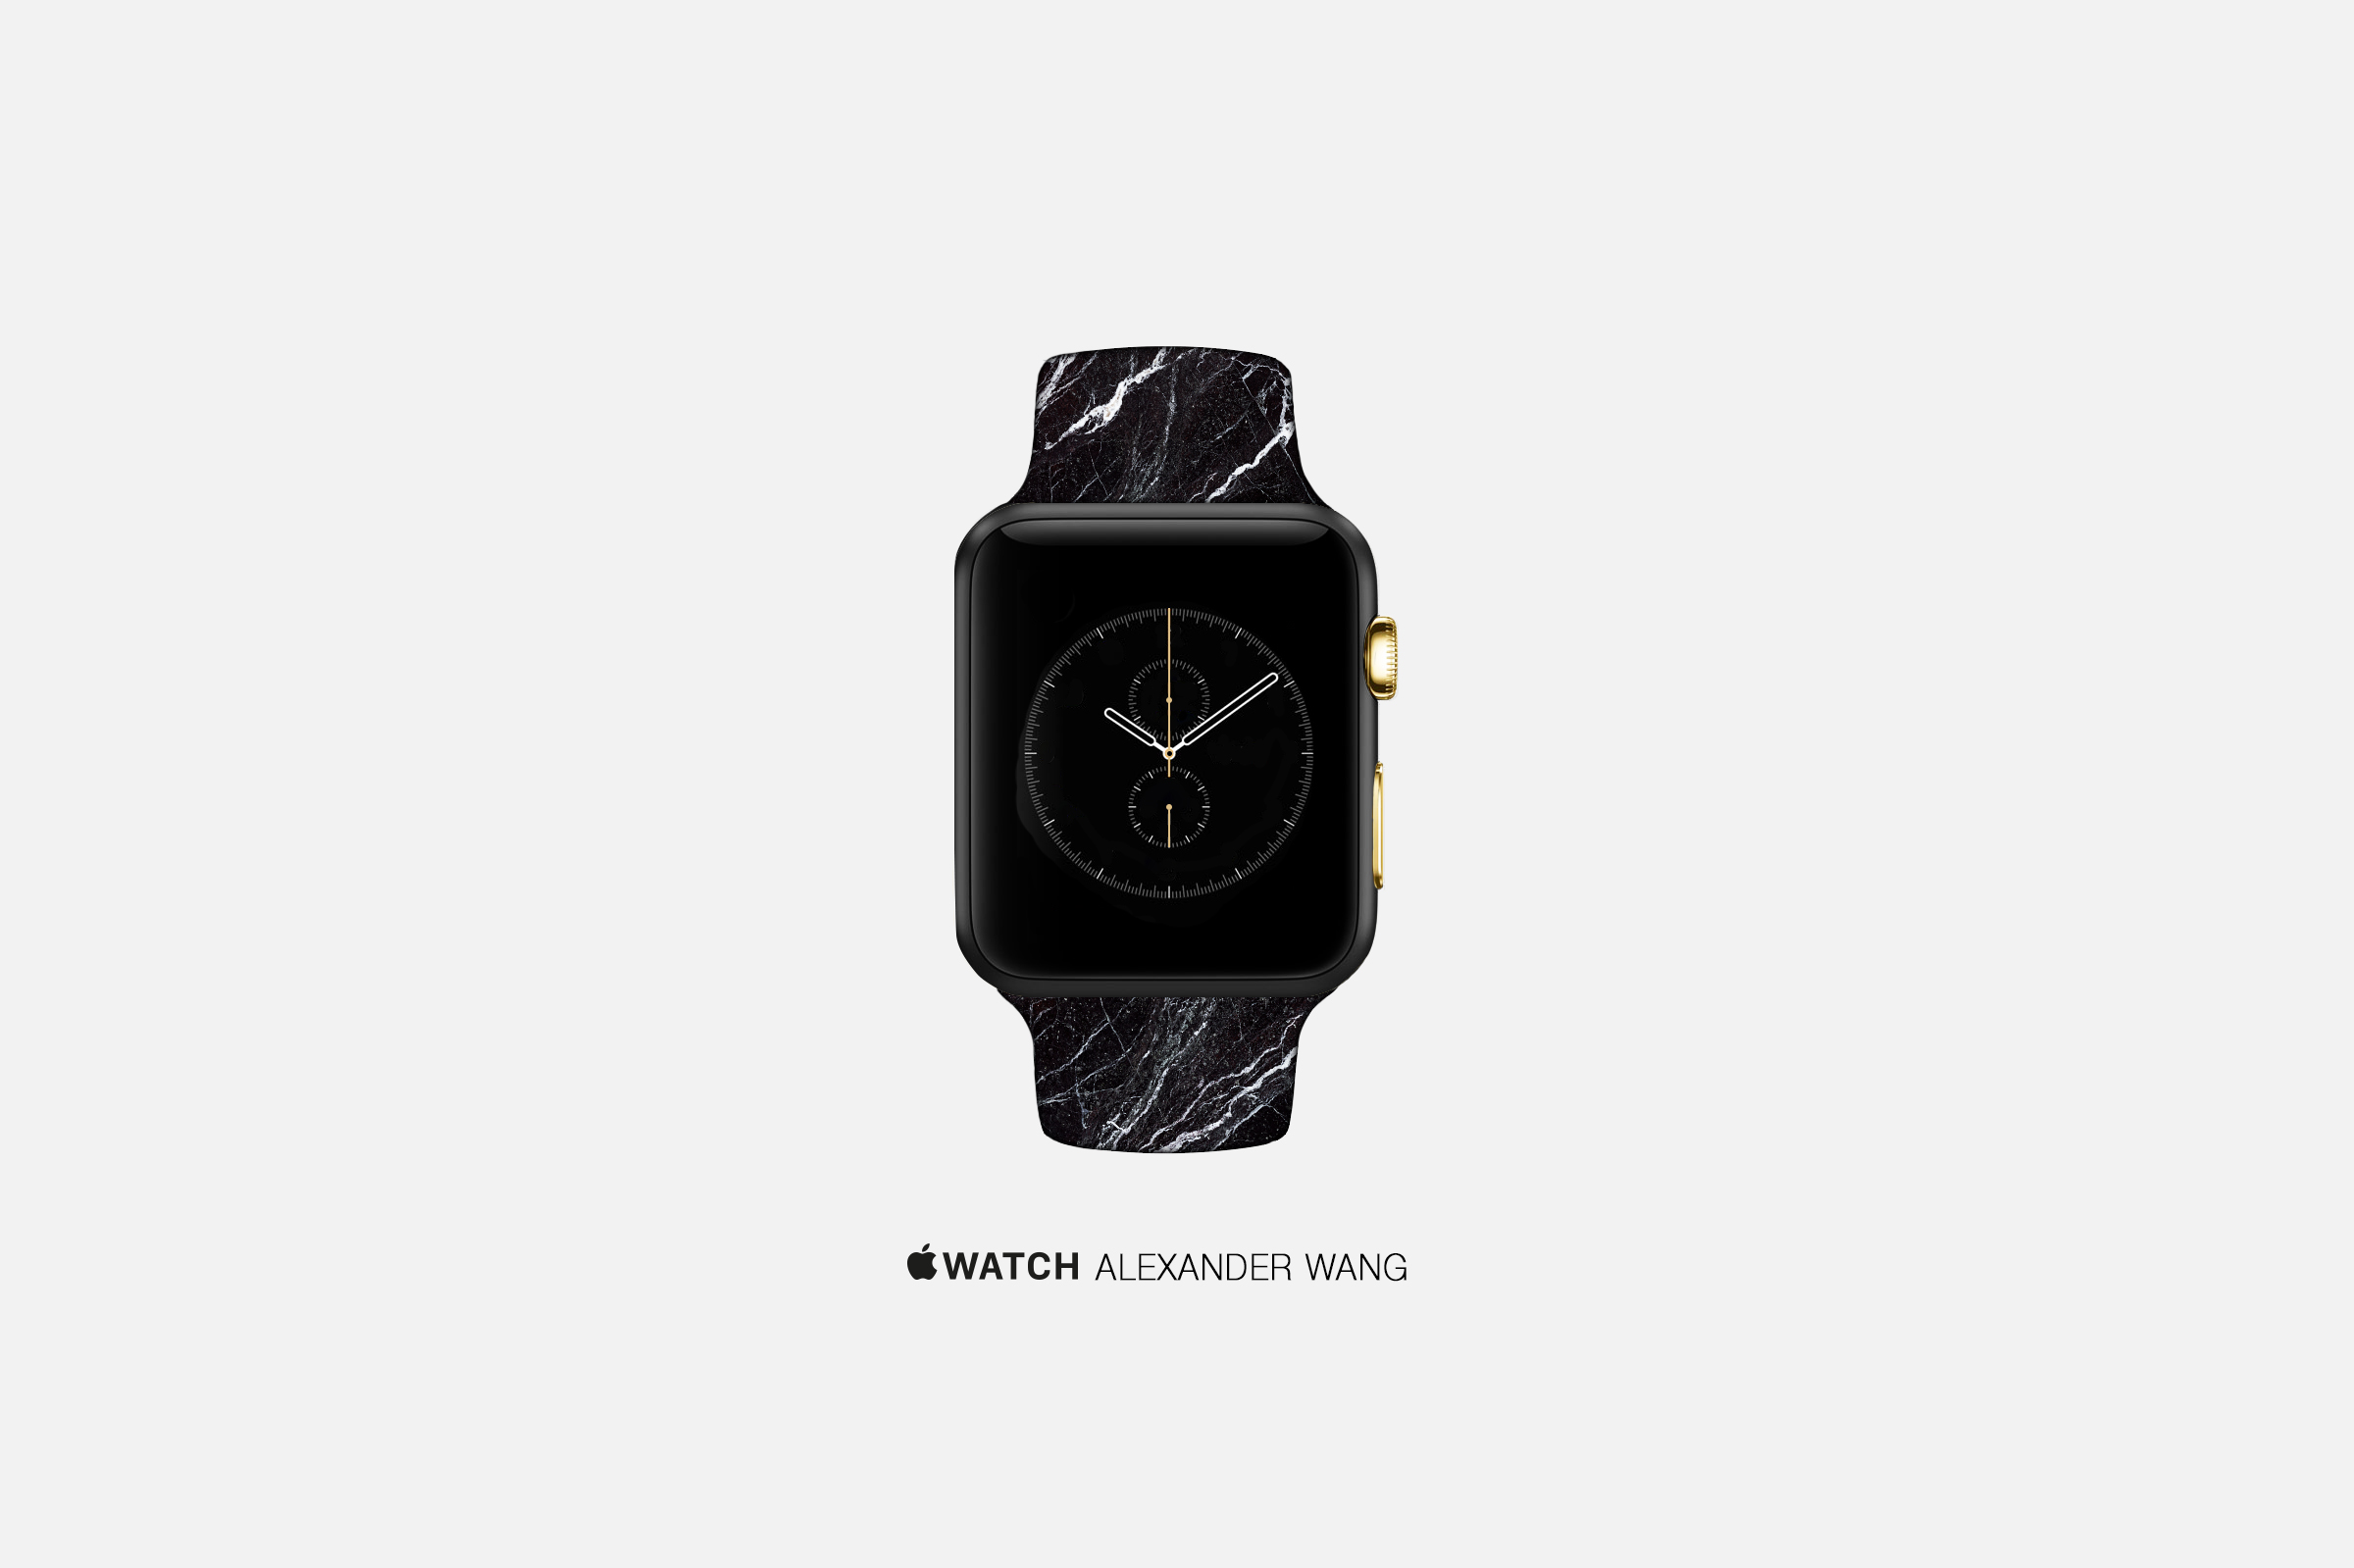 An artist's concept of an Apple Watch by Alexander Wang.